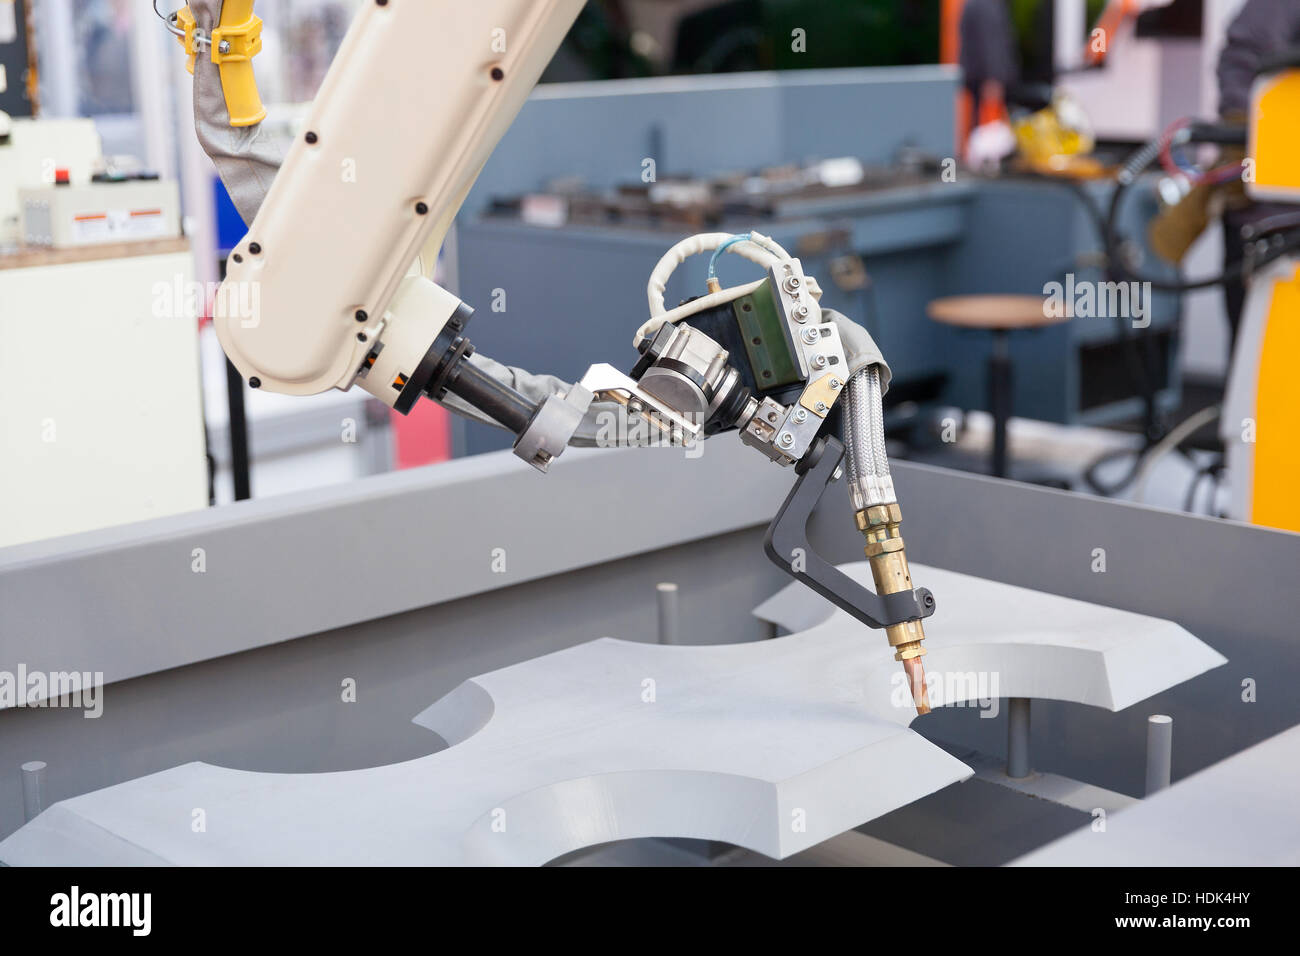 Industrial welding robot arm Stock Photo